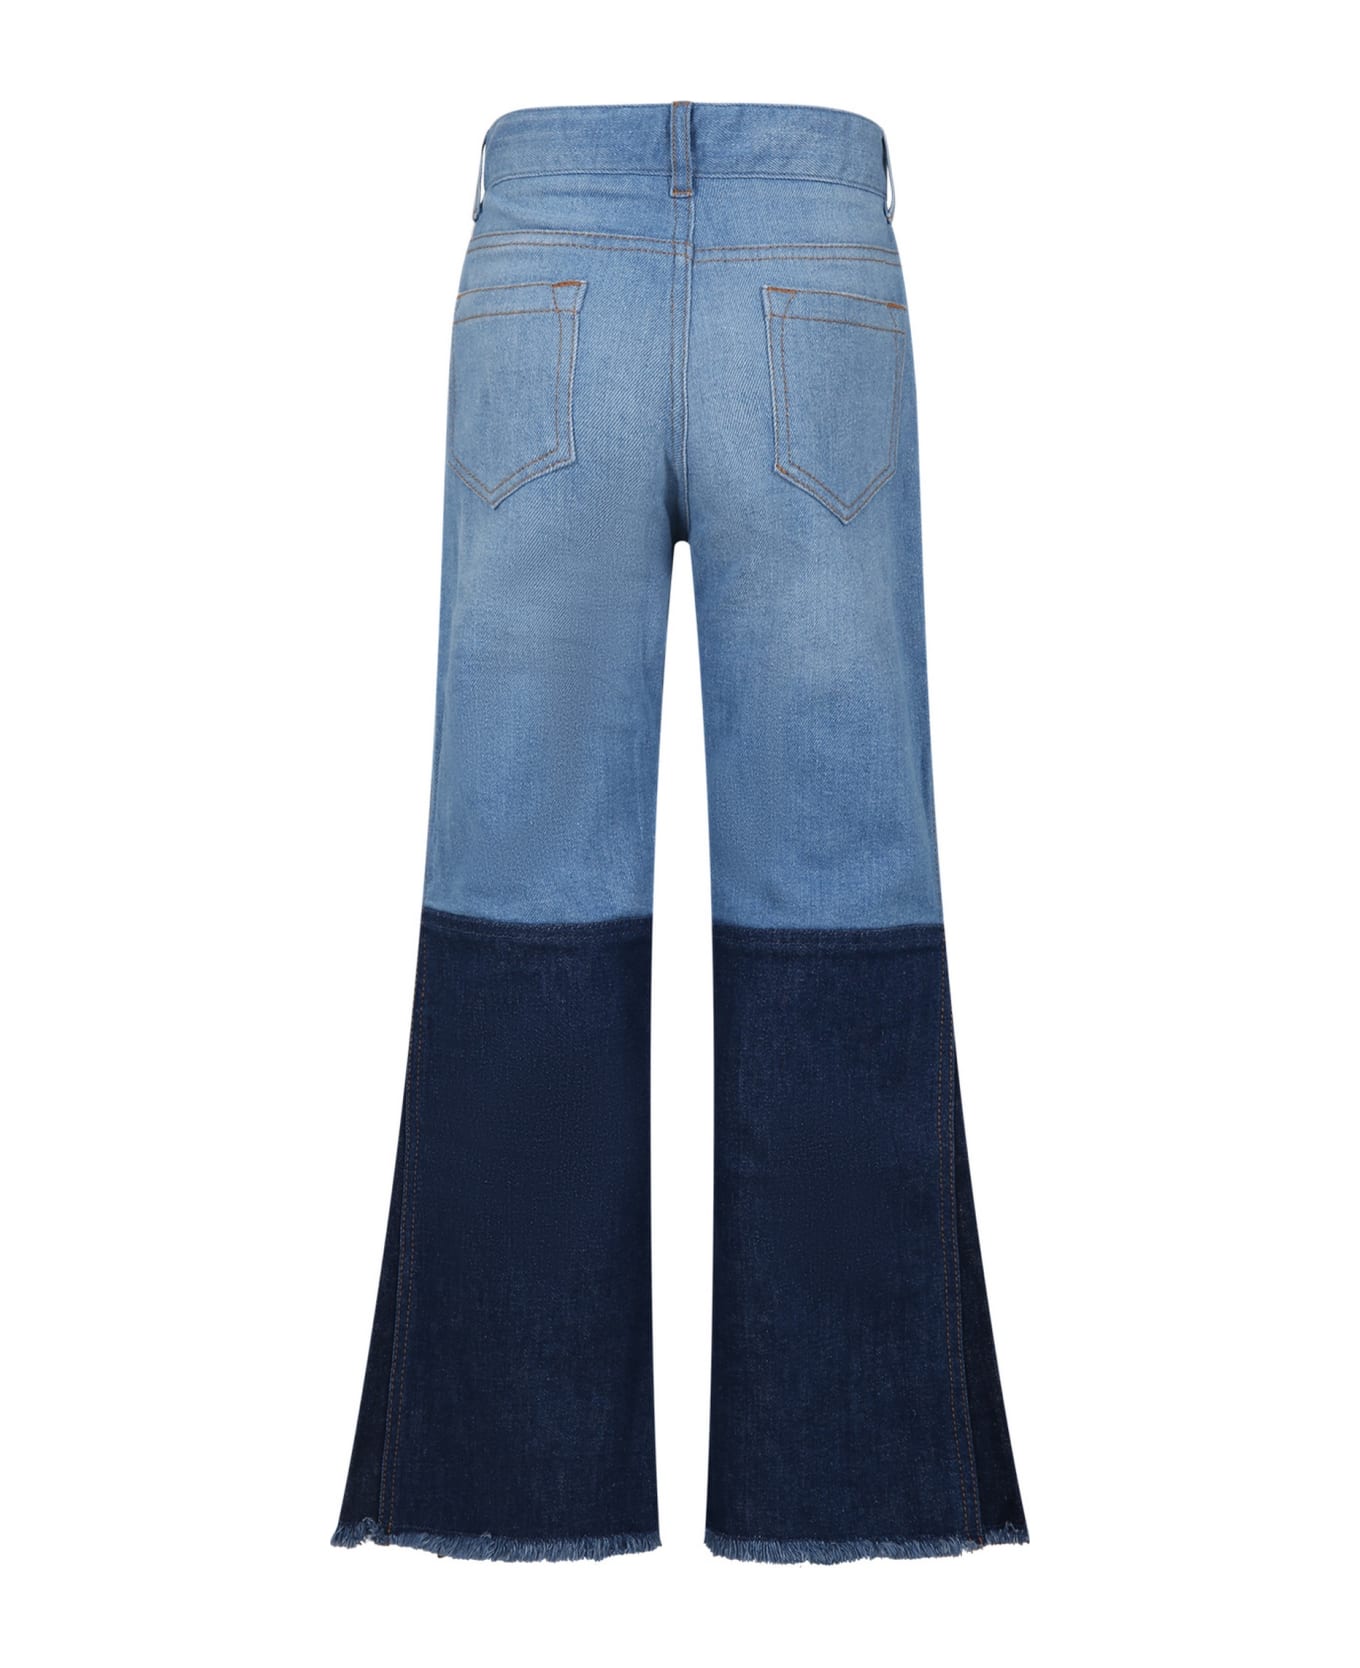 Chloé Light Blue Jeans For Girl With Logo - Denim